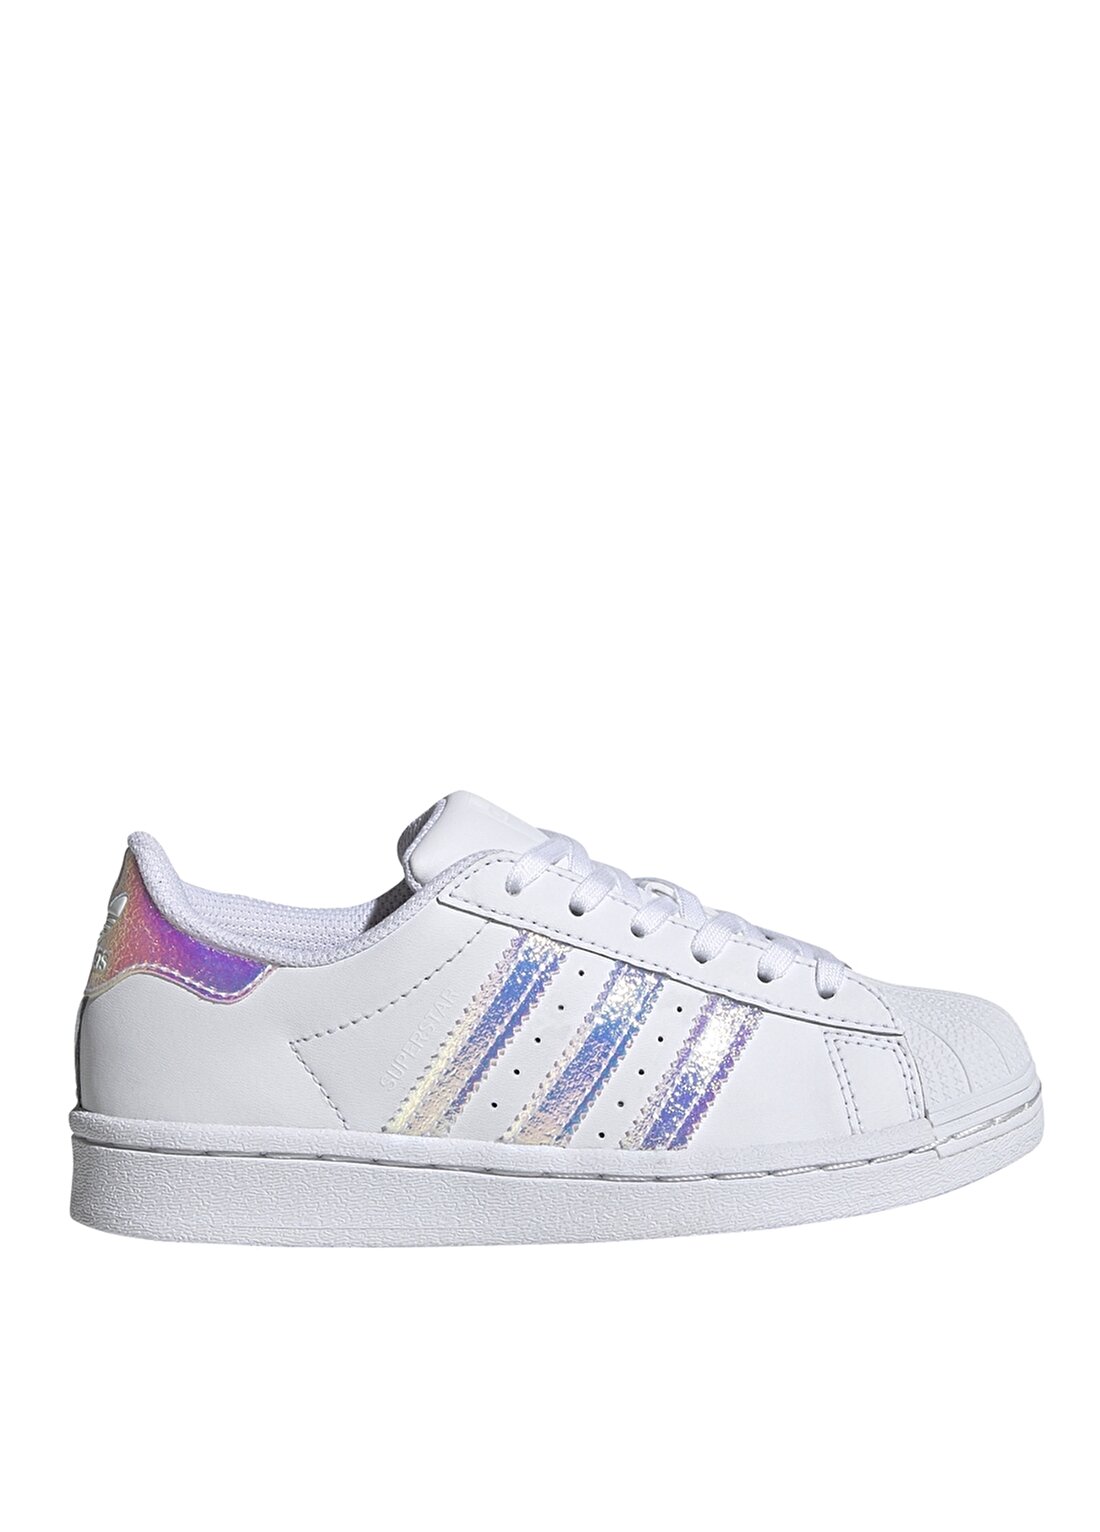 Adidas Beyaz Kız Çocuk Yürüyüş Ayakkabısı - FV3147 Superstar C